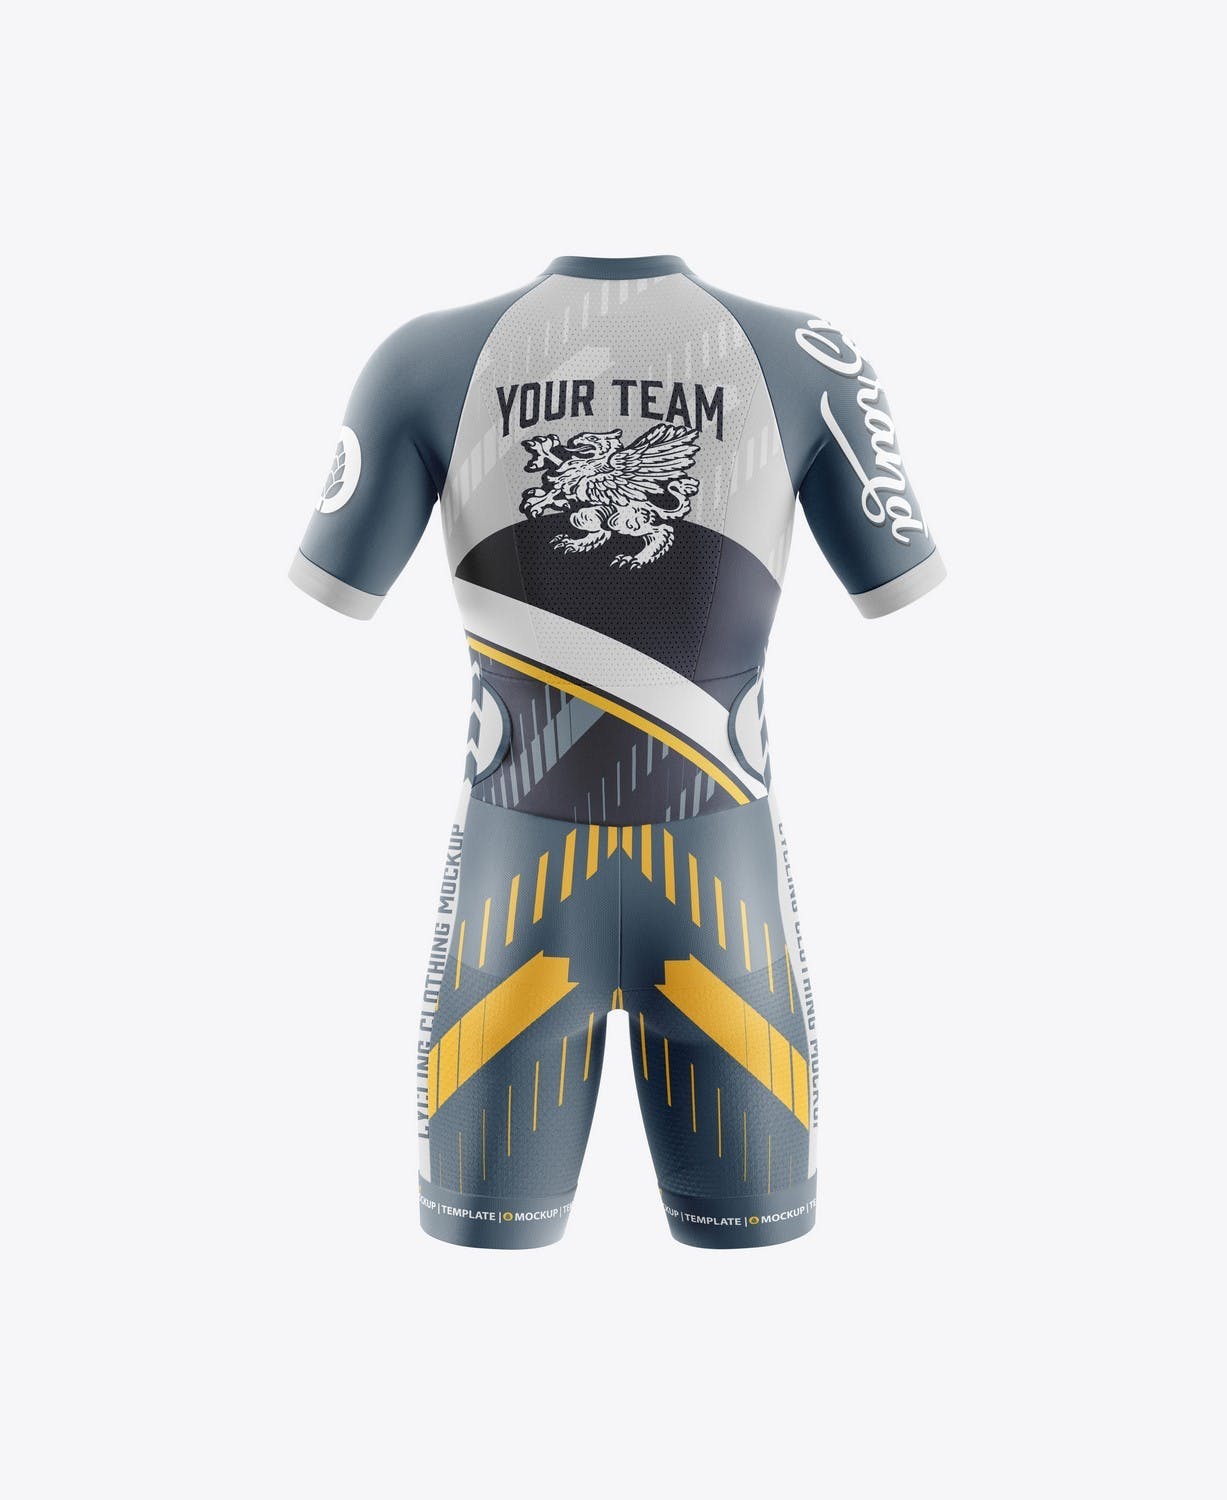 男子运动套装自行车服装品牌设计样机 Sport Cycling Suit for Men Mockup 样机素材 第4张